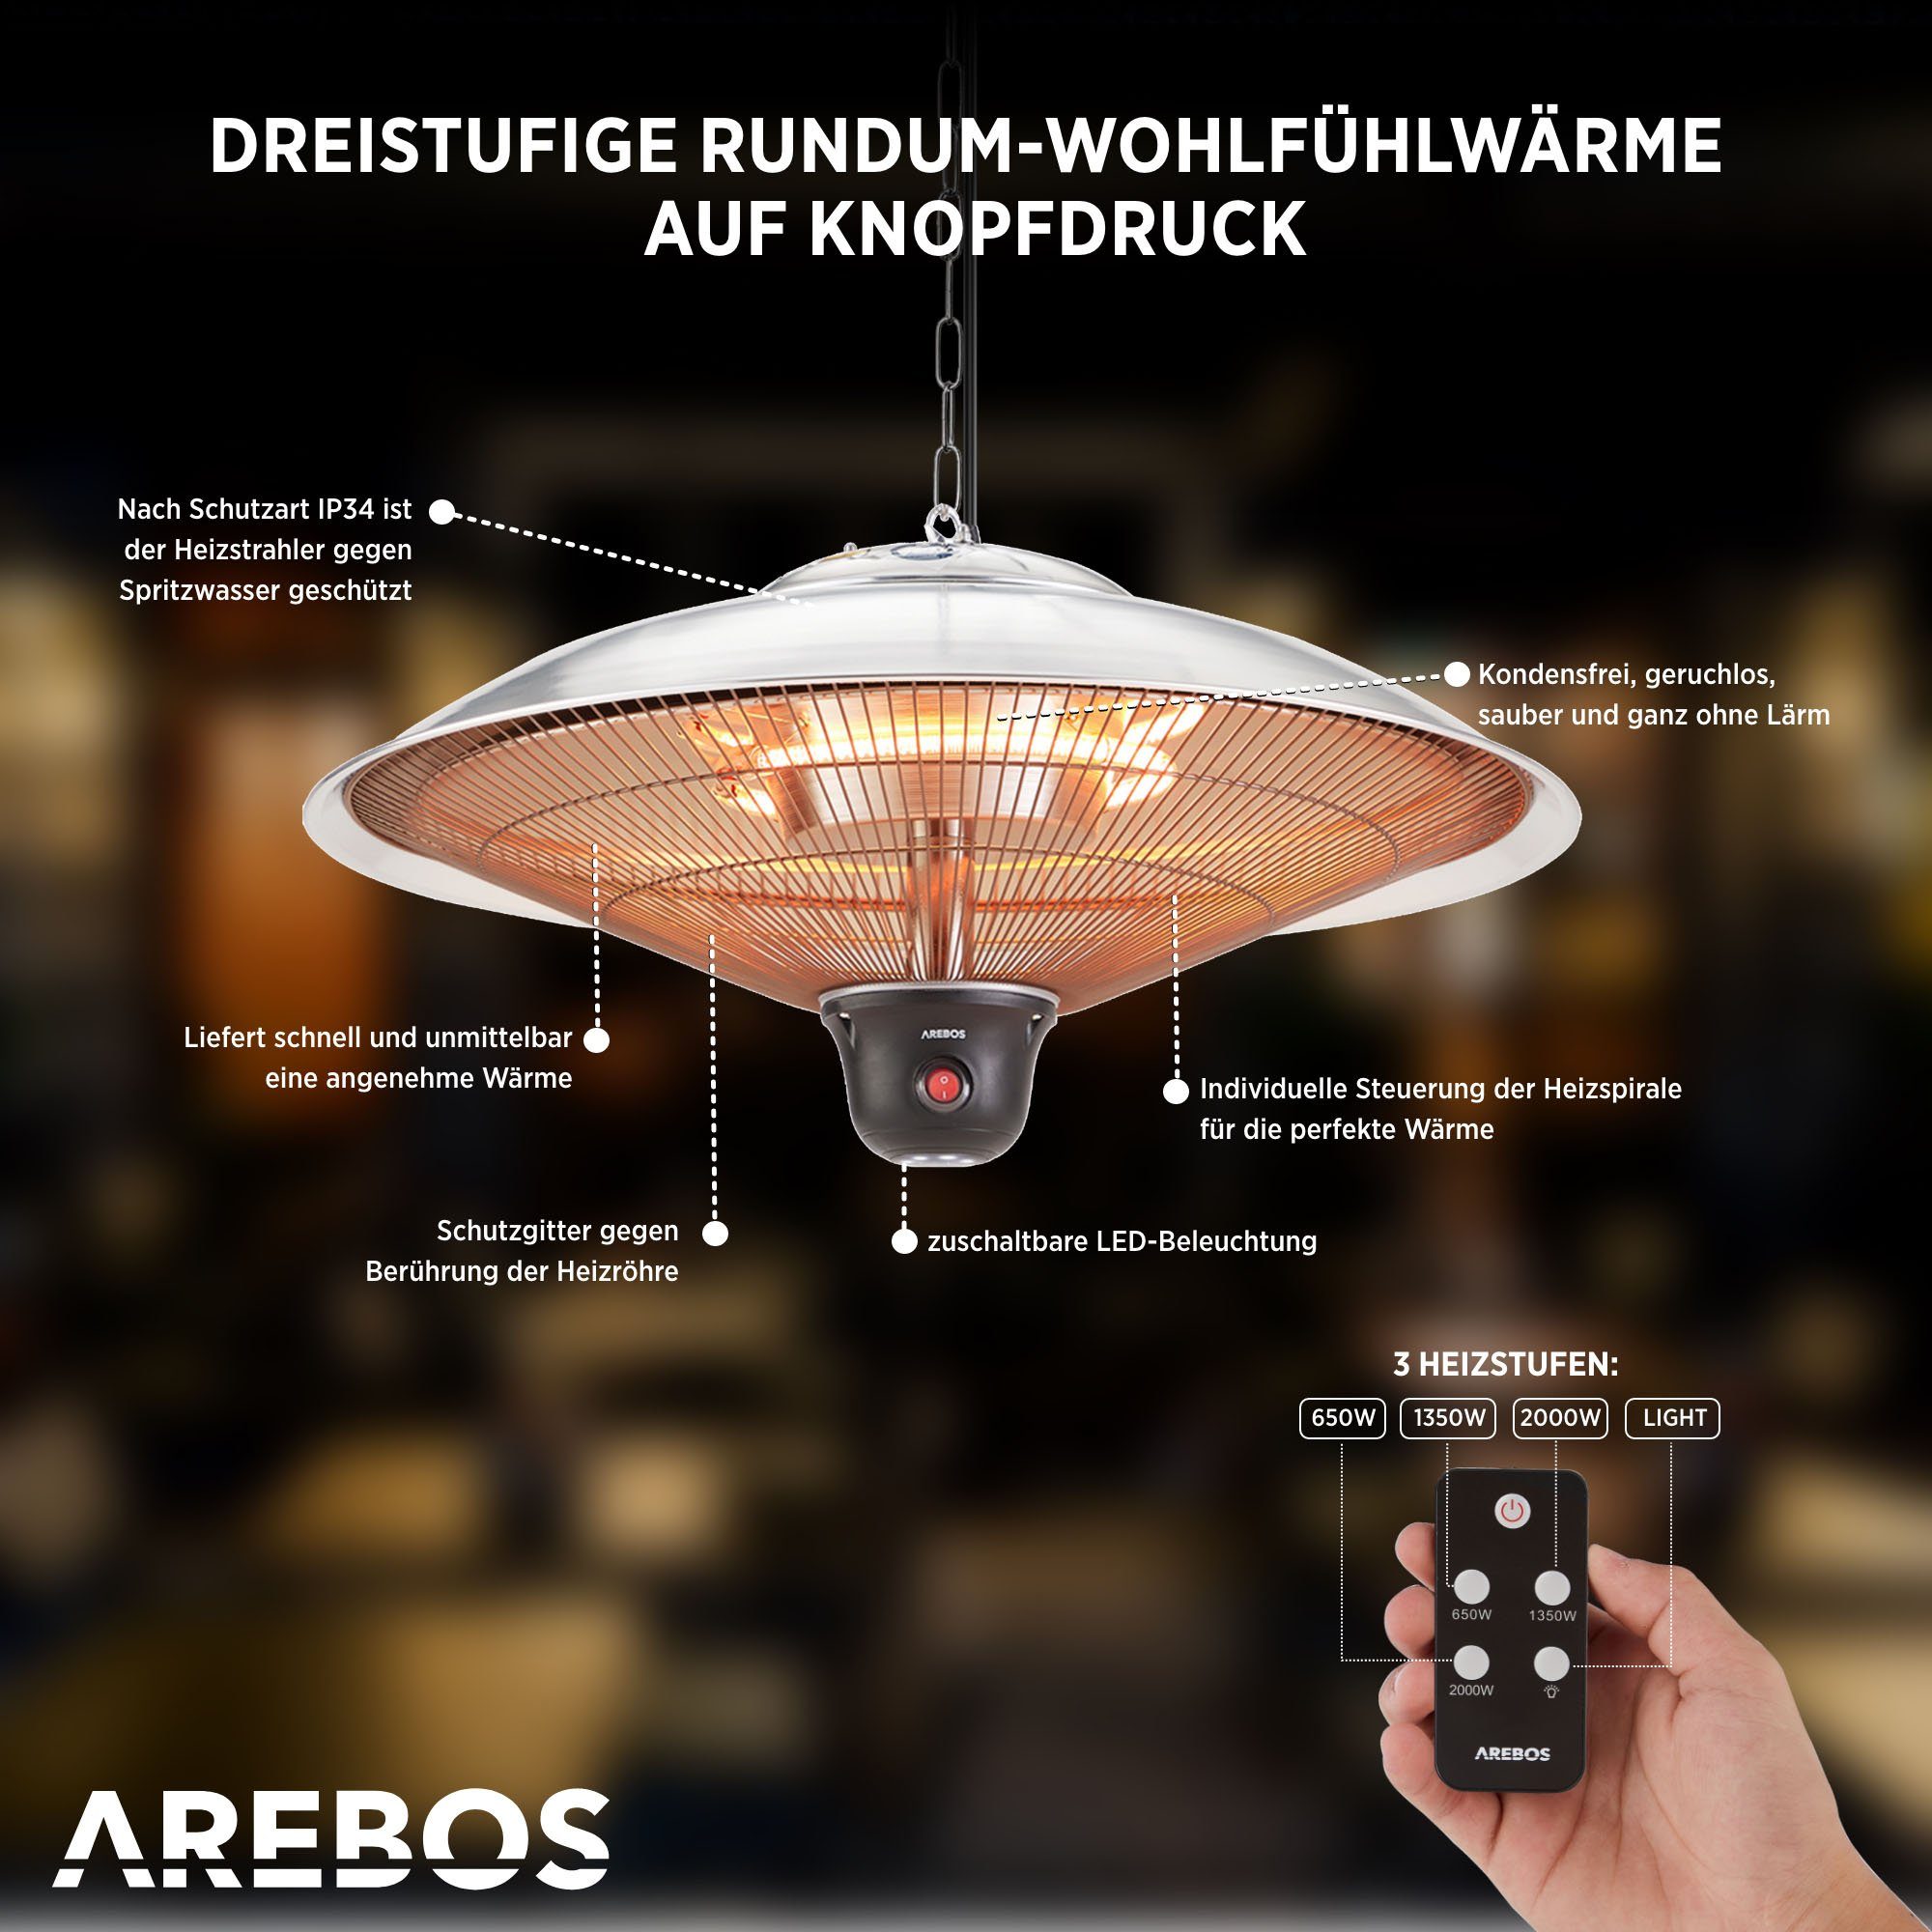 Arebos Infrarotstrahler Deckenheizstrahler, 2.000 W, silber LED-Lampe inkl. + Fernbedienung